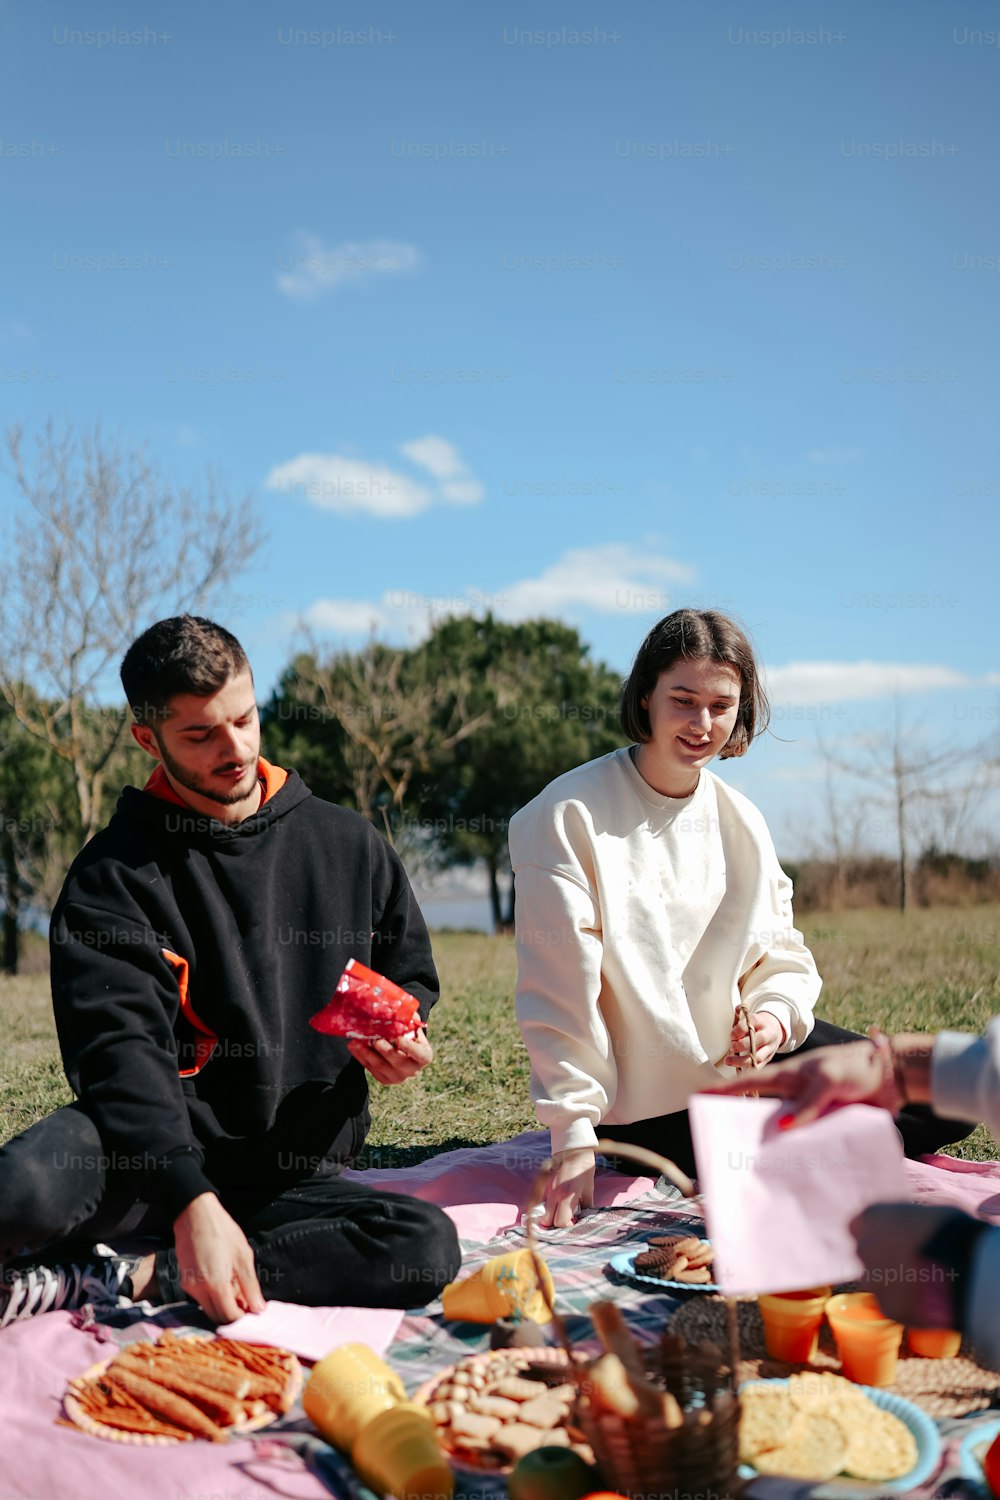 Un homme et une femme assis sur une couverture en train de manger